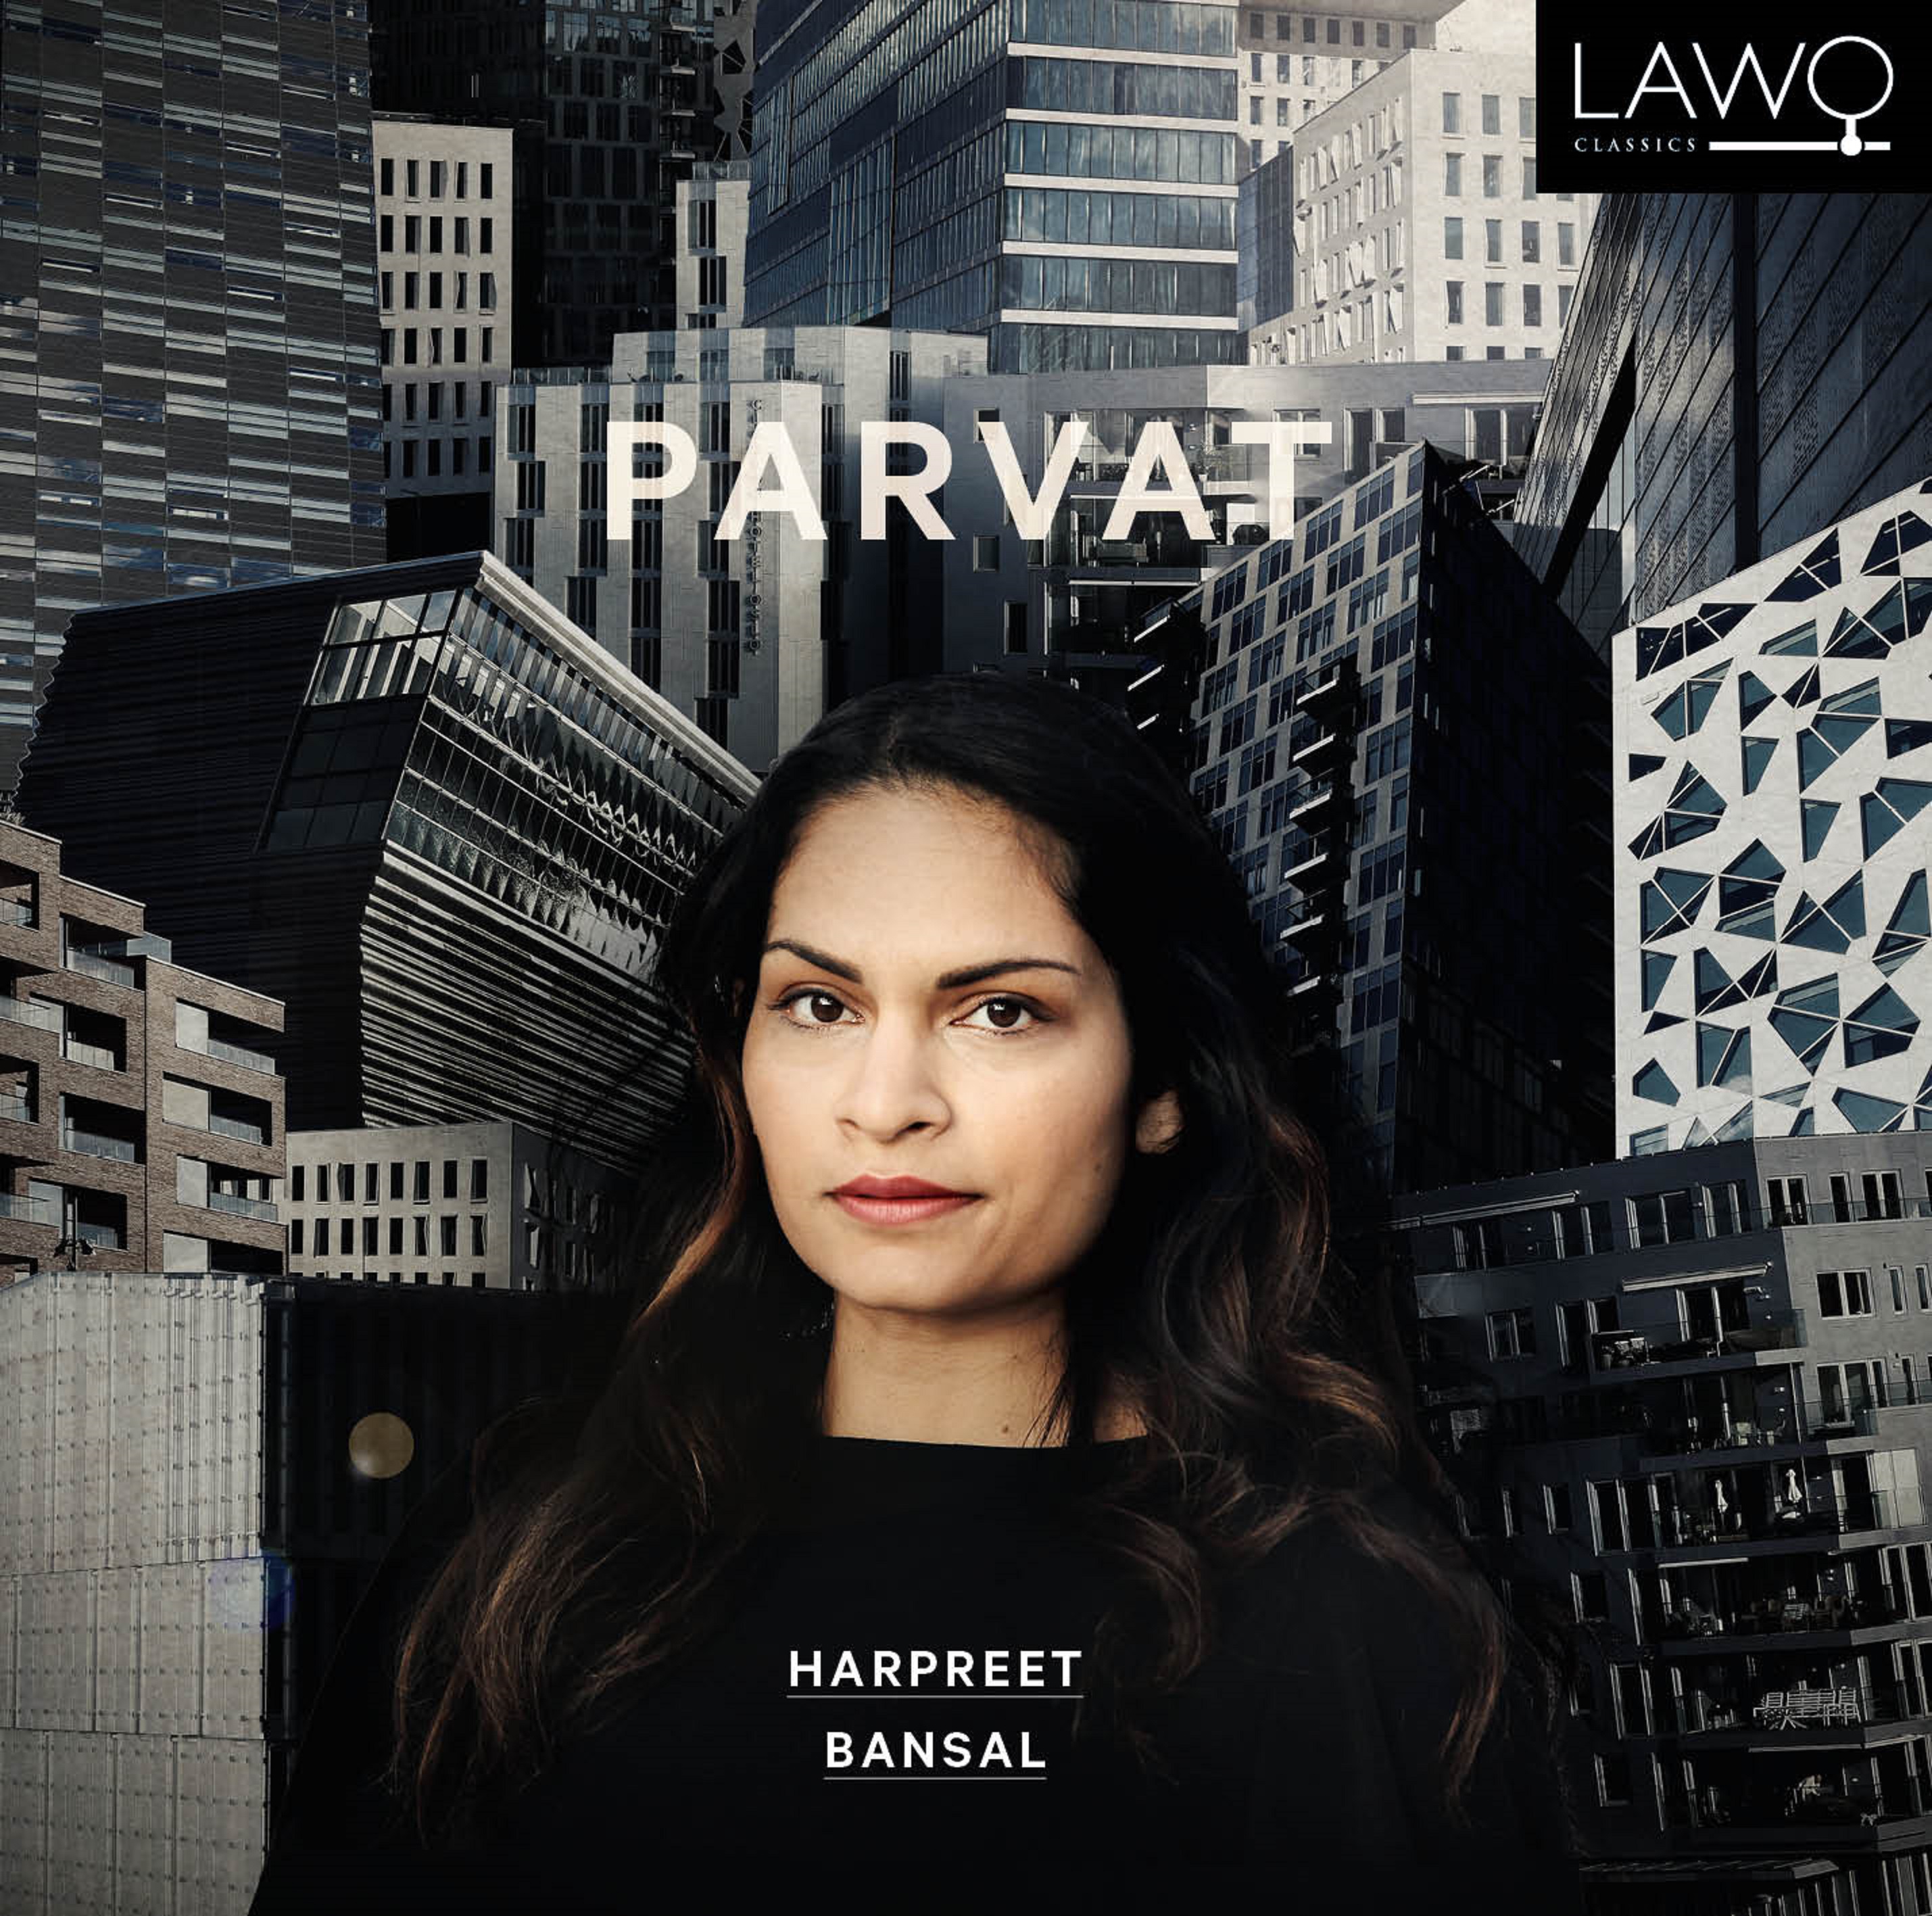 Grammy Nominated Harpreet Bansal Returns With New Album Parvat